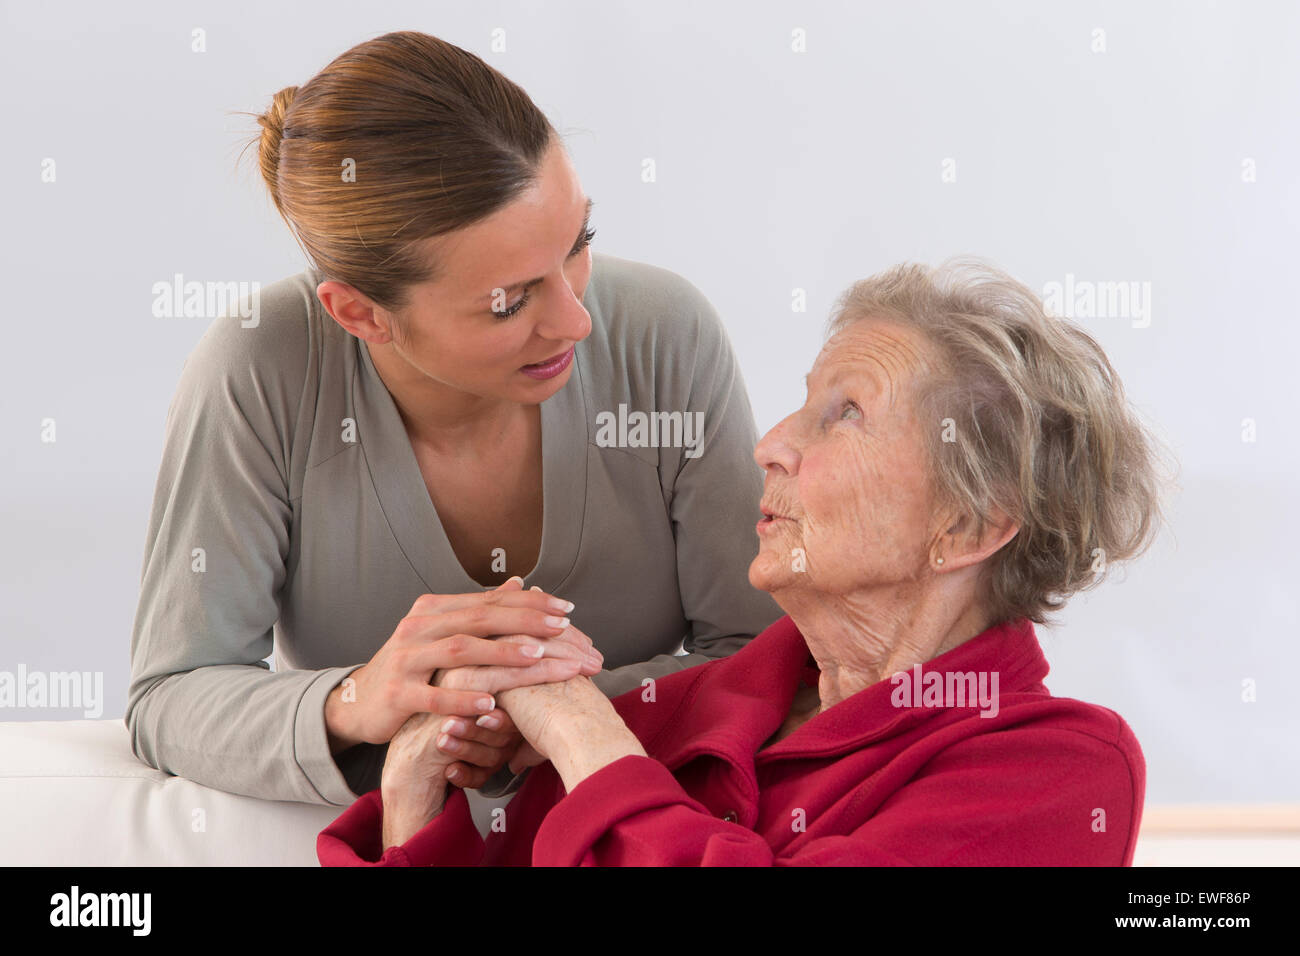 Persona anziana in ambienti interni Foto Stock